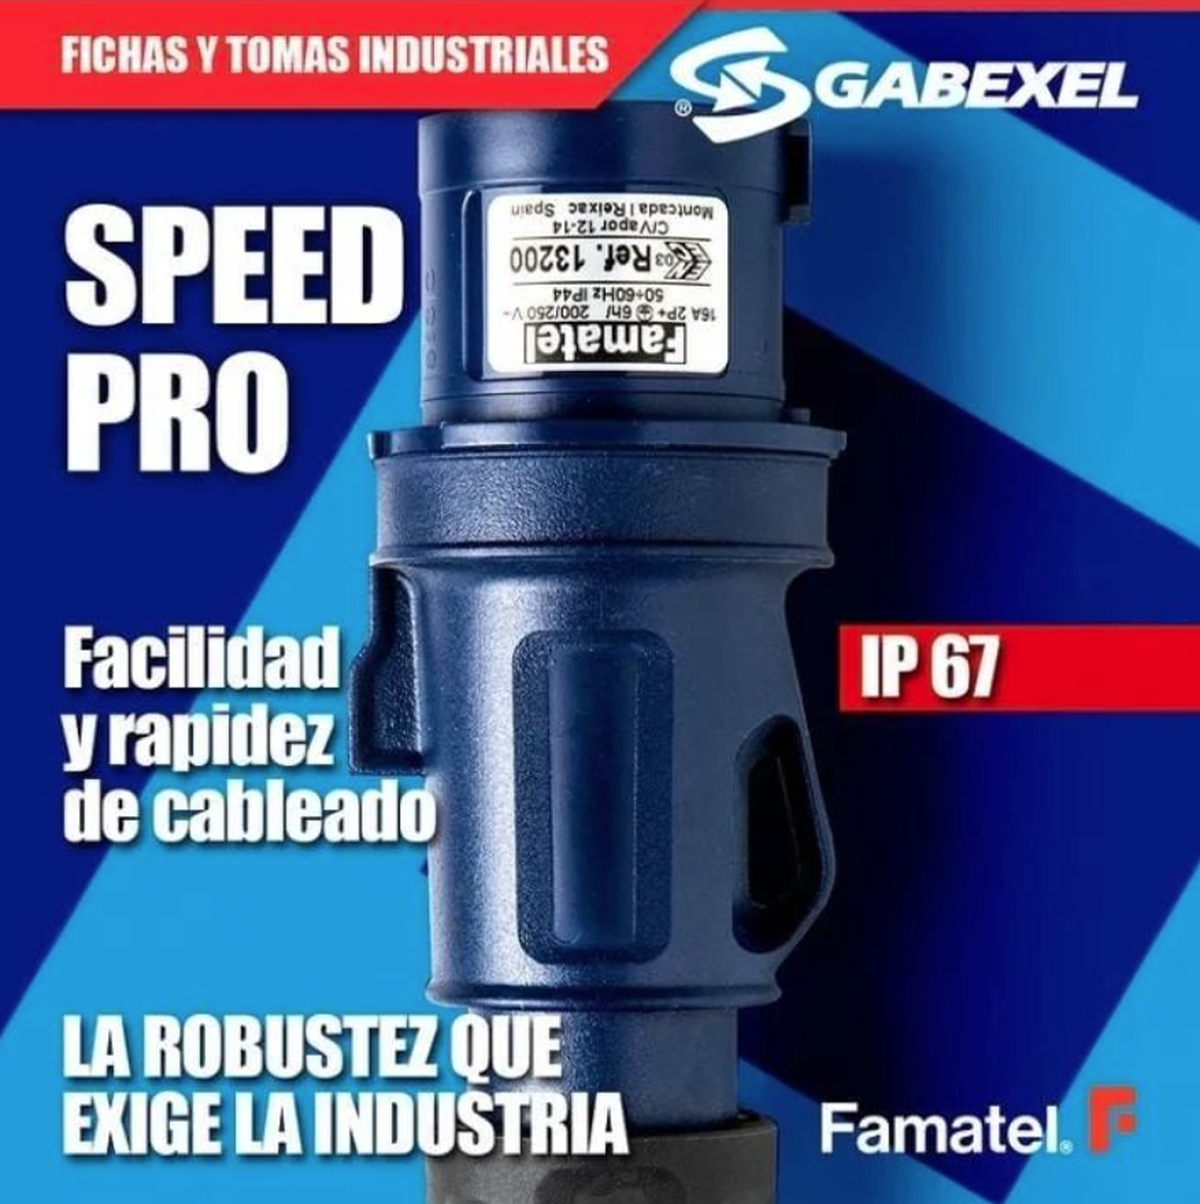 Fichas y Tomas Industriales FAMATEL - GABEXEL